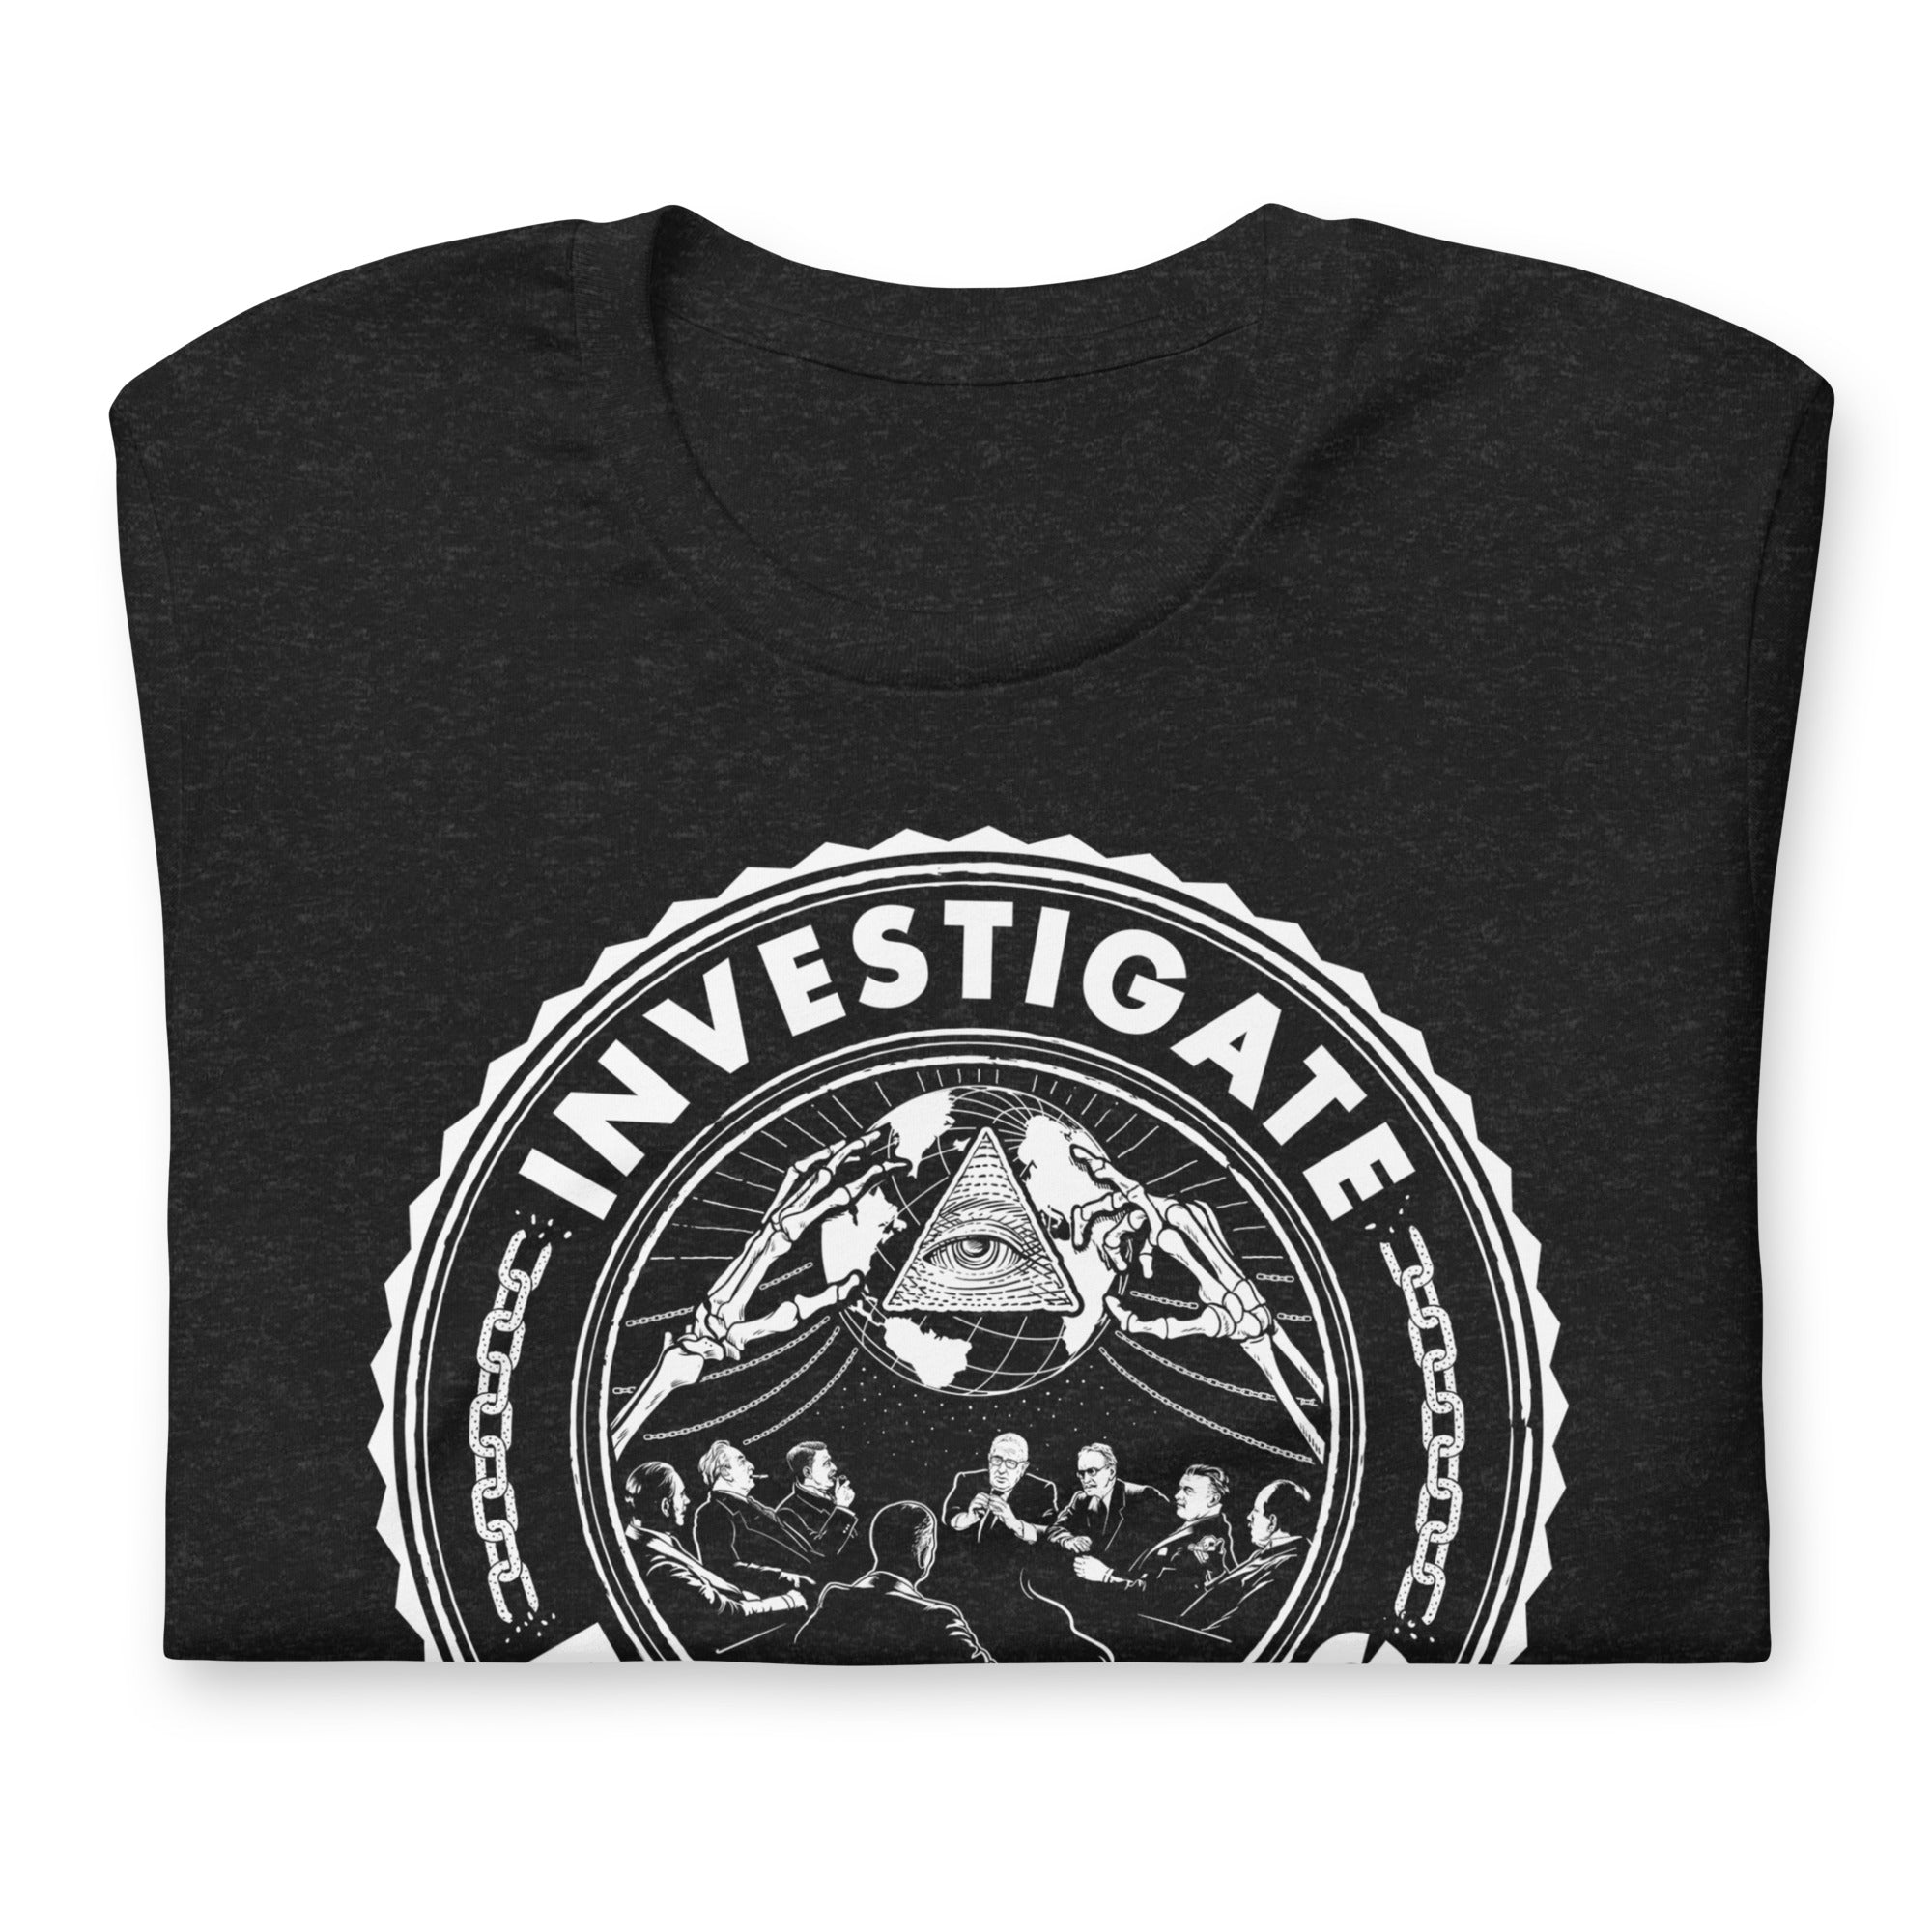 Investigate Bilderberg Two-Sided T-Shirt